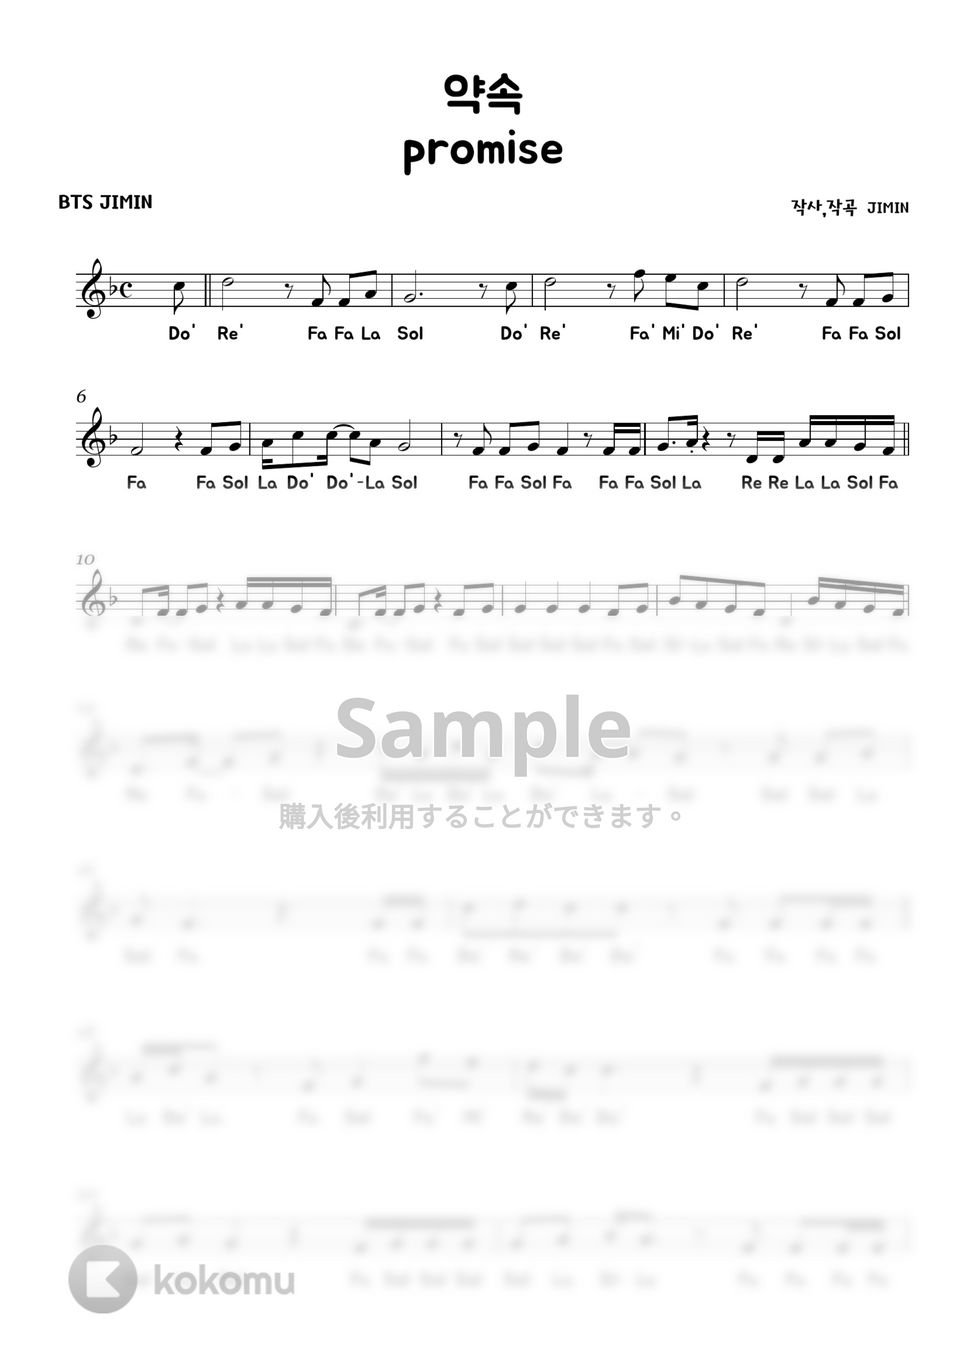 防弾少年団 (BTS) - Promise (Melody ver.) by MINIBINI